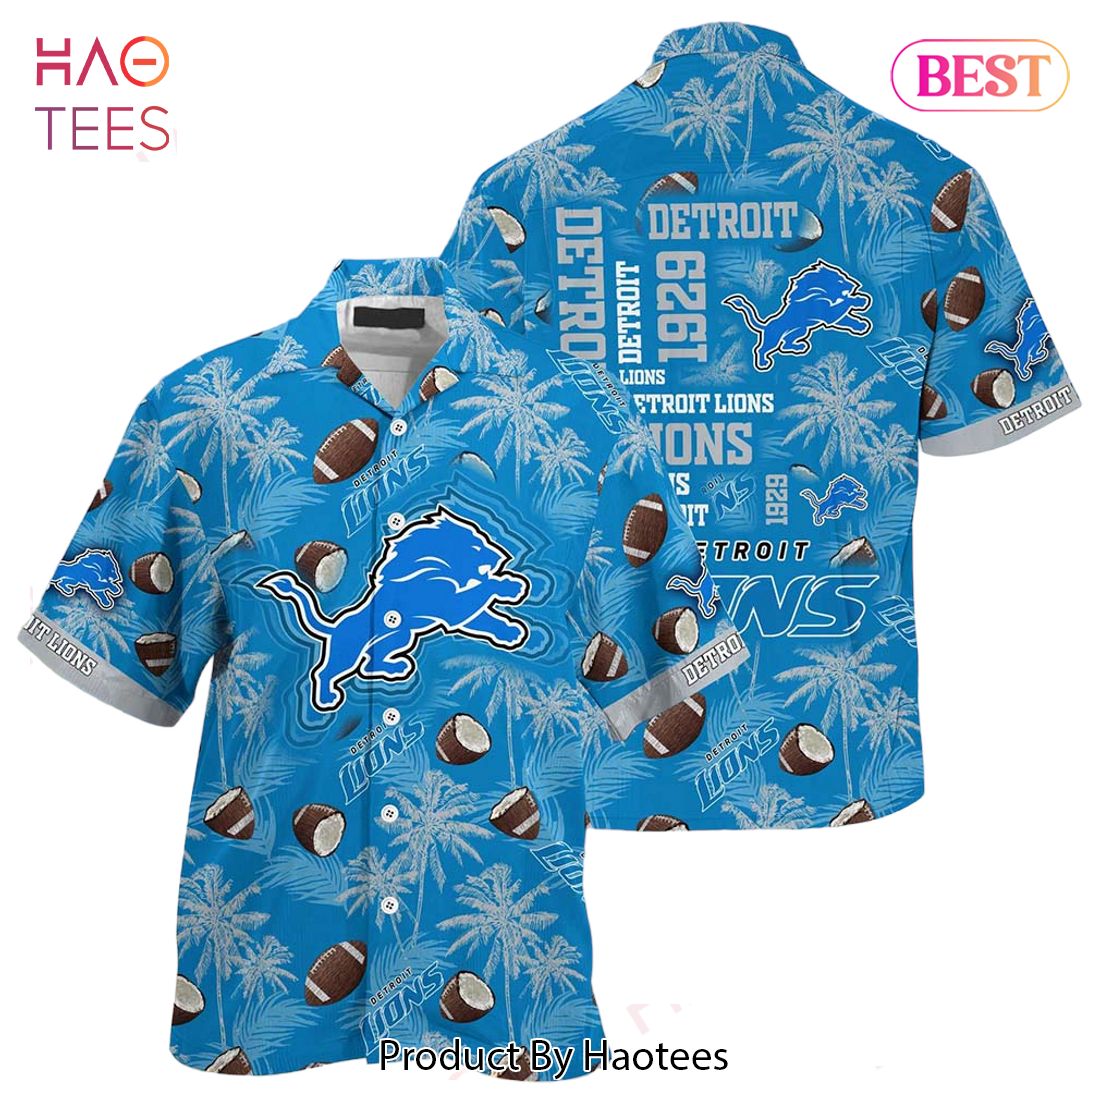 HOT TREND Detroit Lions NFL Beach Shirt New Gift For Summer Hawaiian Shirt